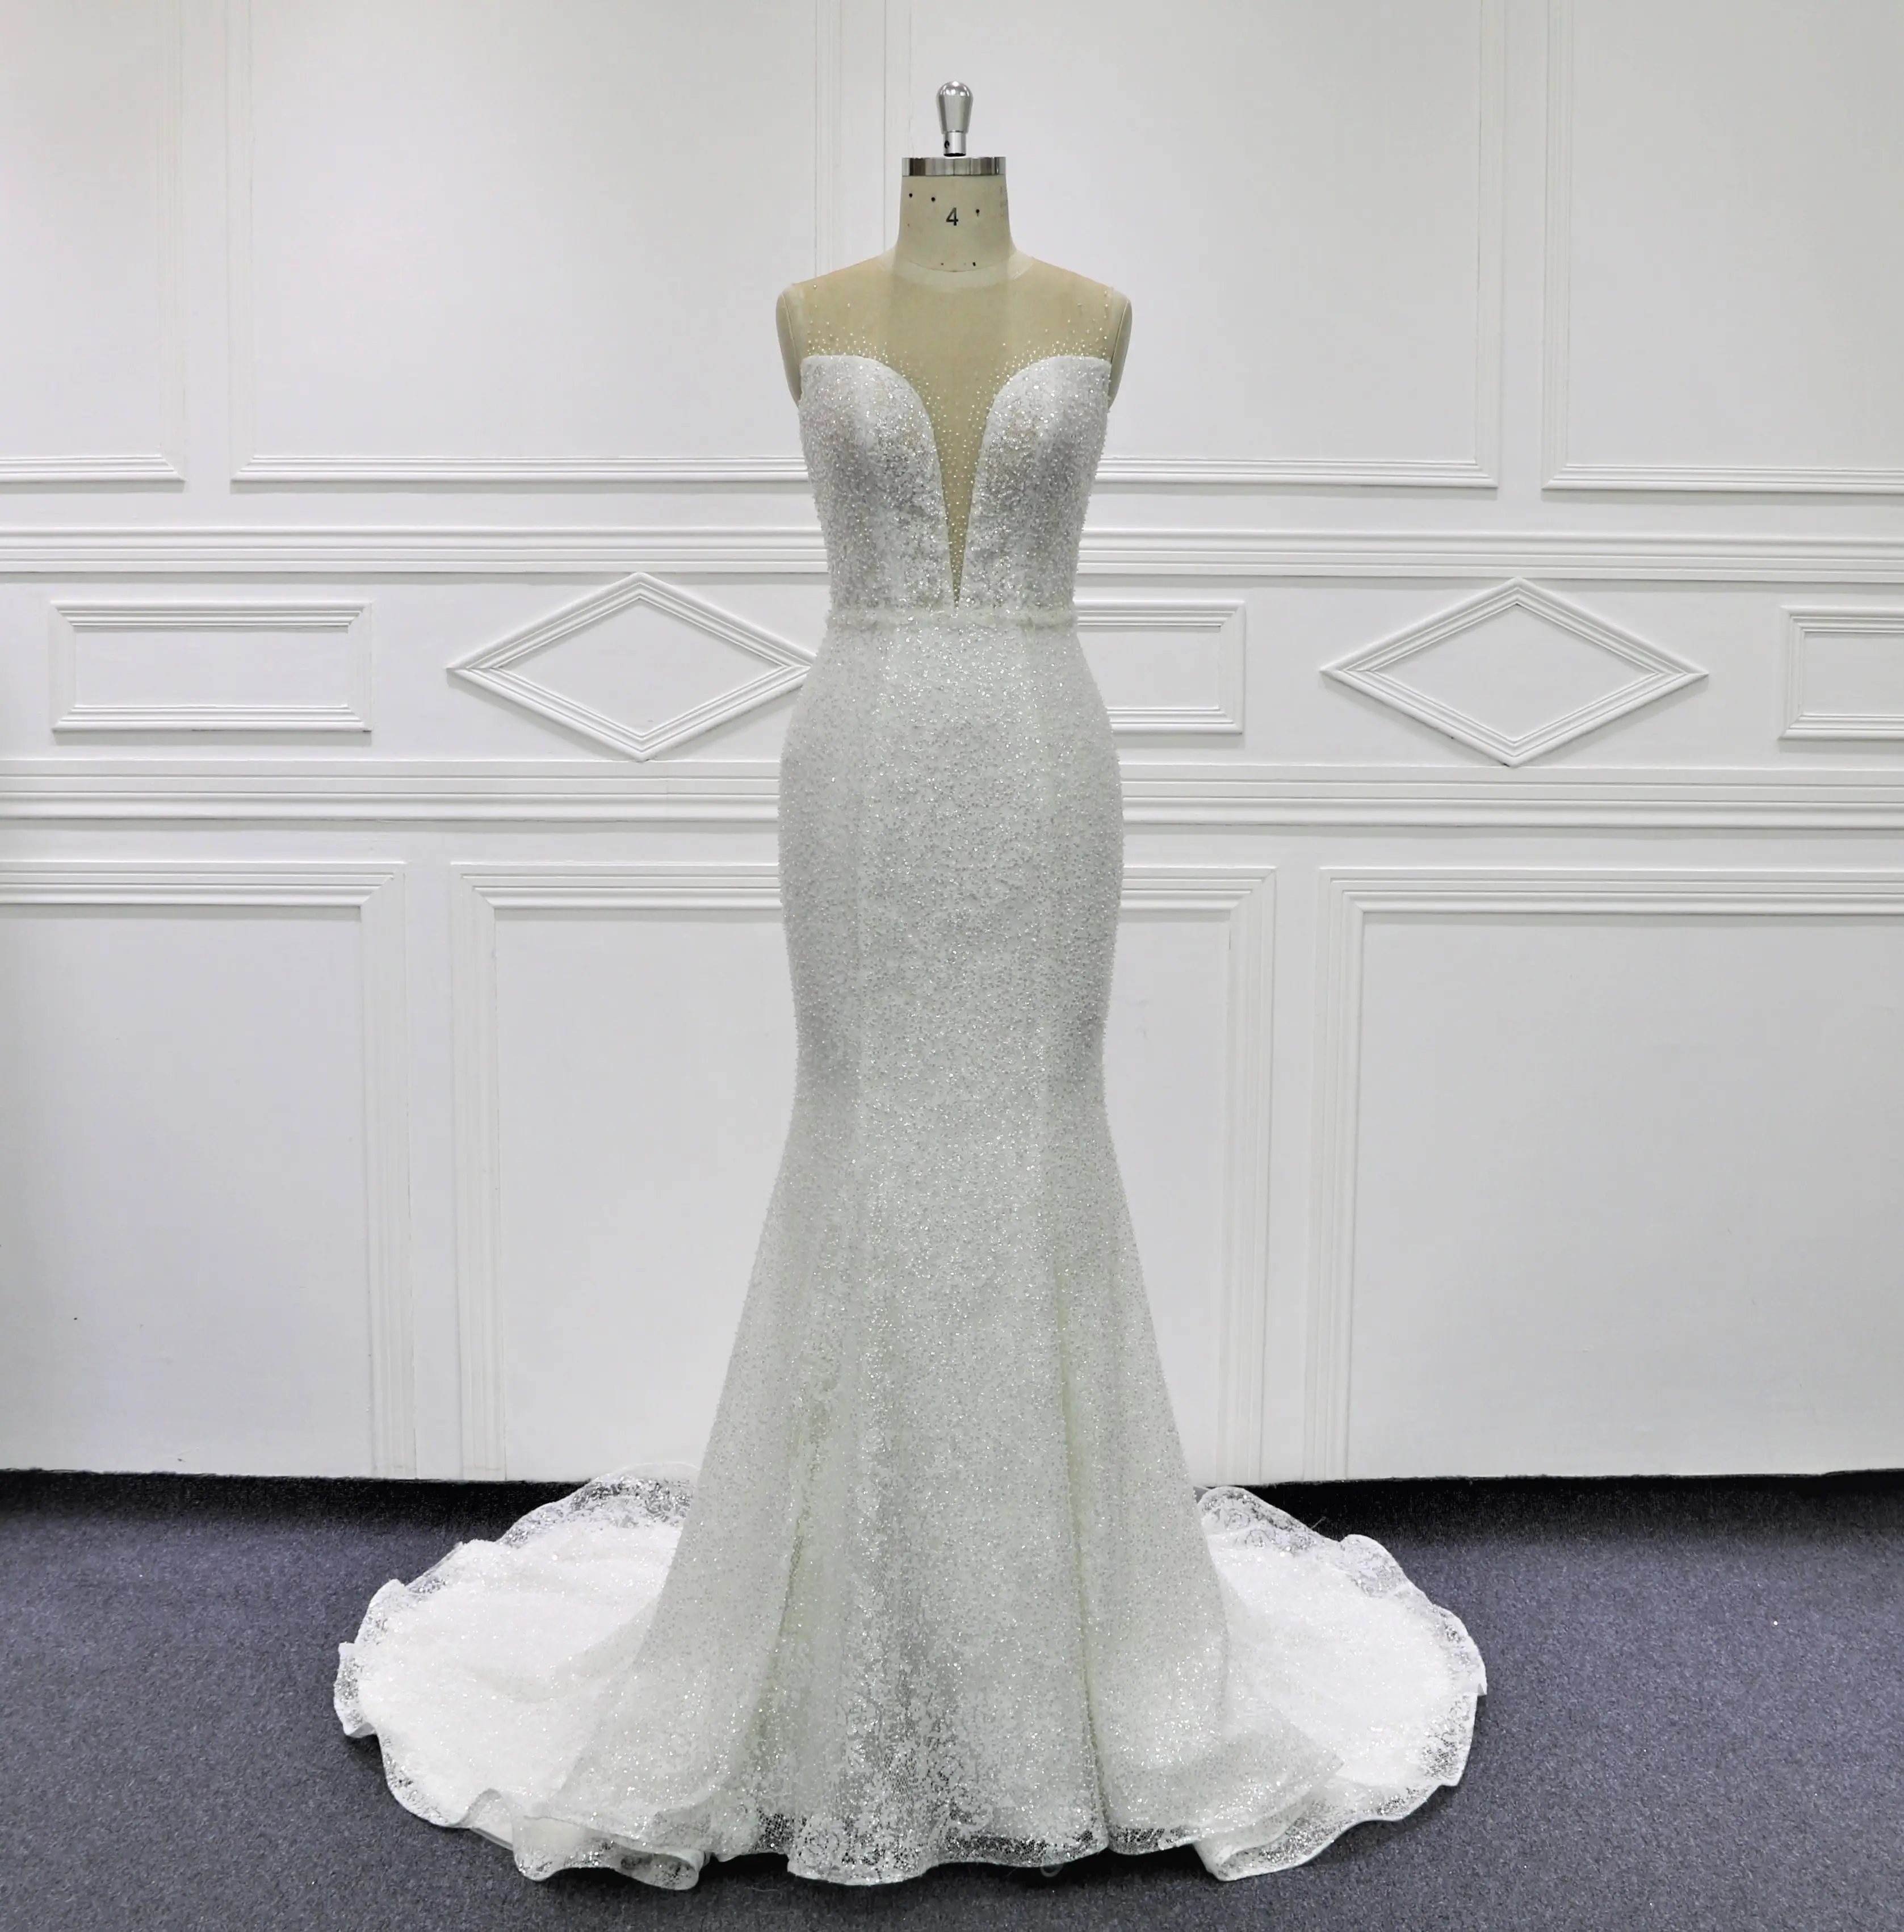 Beaury Bridal High Quality Glittery Lace Mermaid Brautkleider MK306 Rücken illusion mit Knöpfen formelle Party